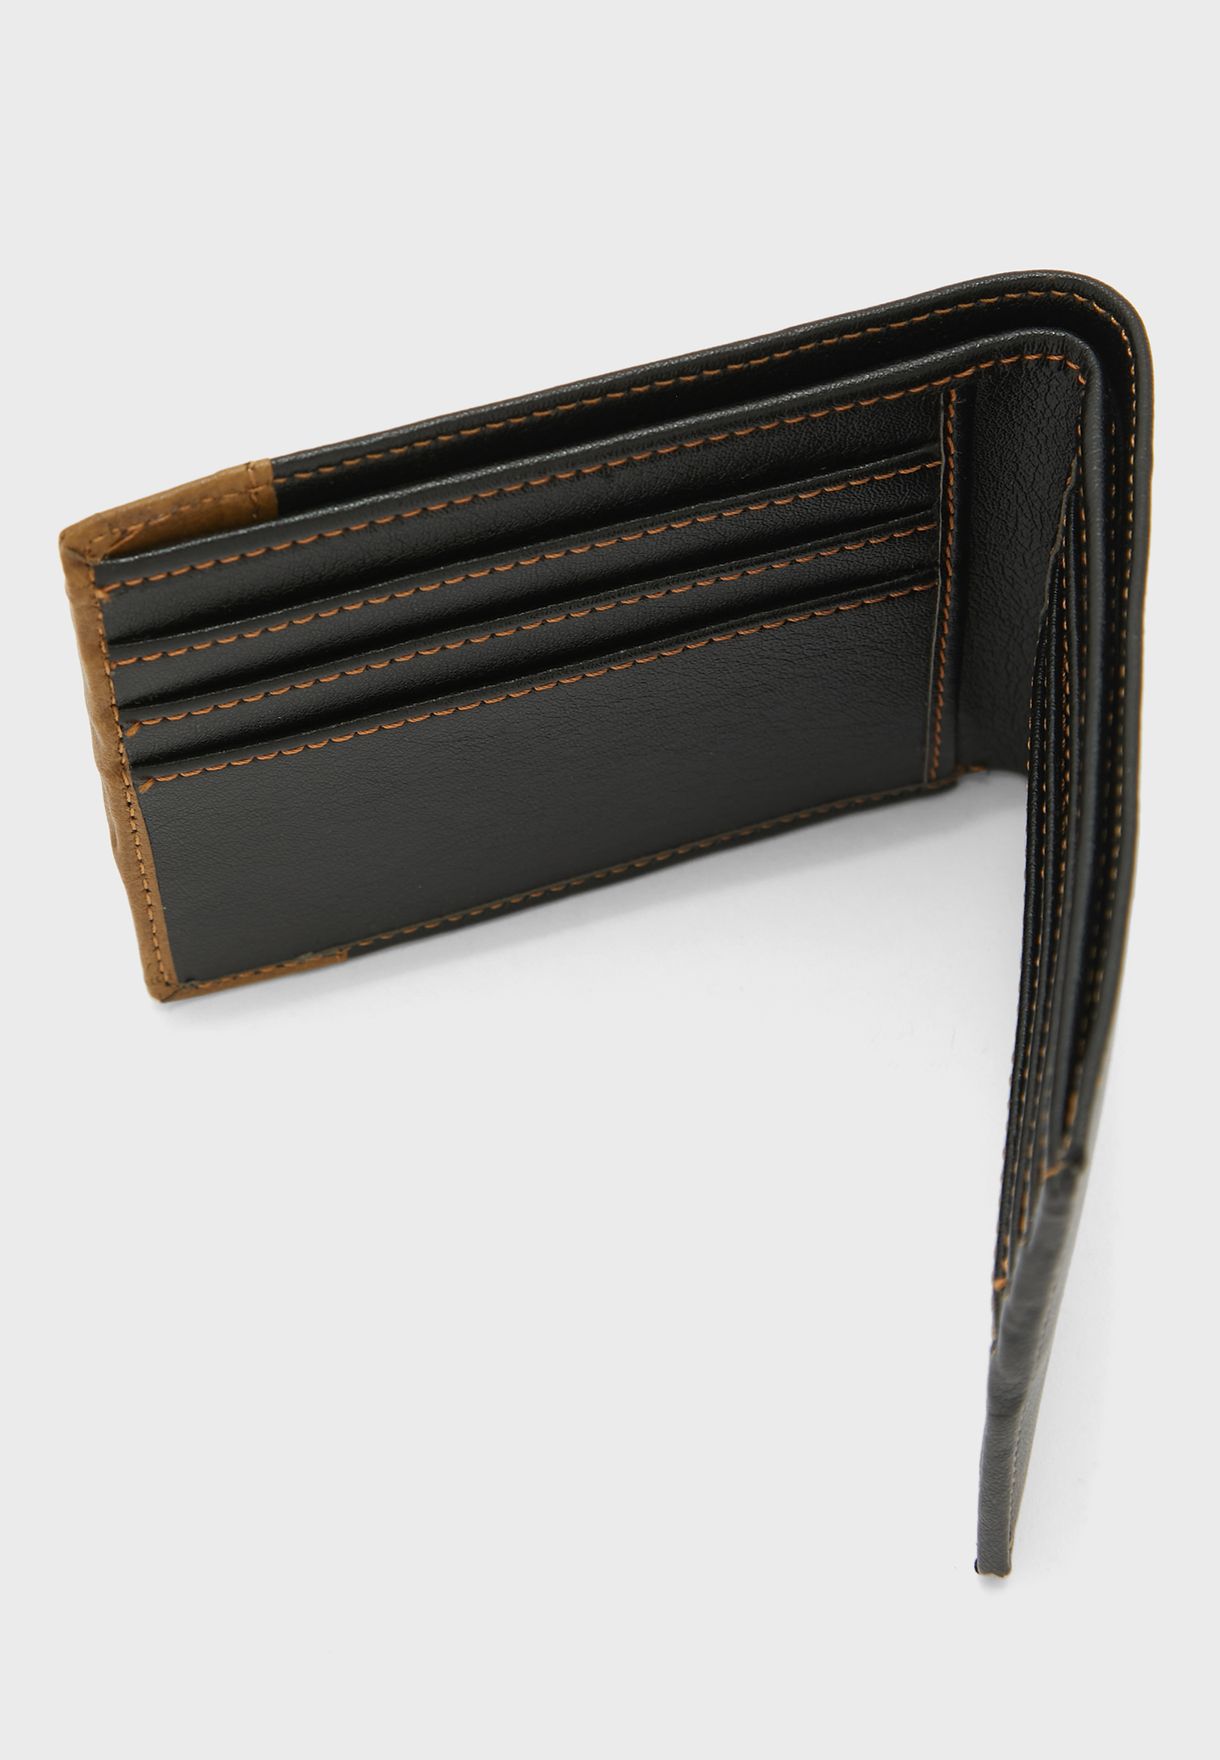 Wallet, Keyring And Resizable Formal Belt Gifting Set